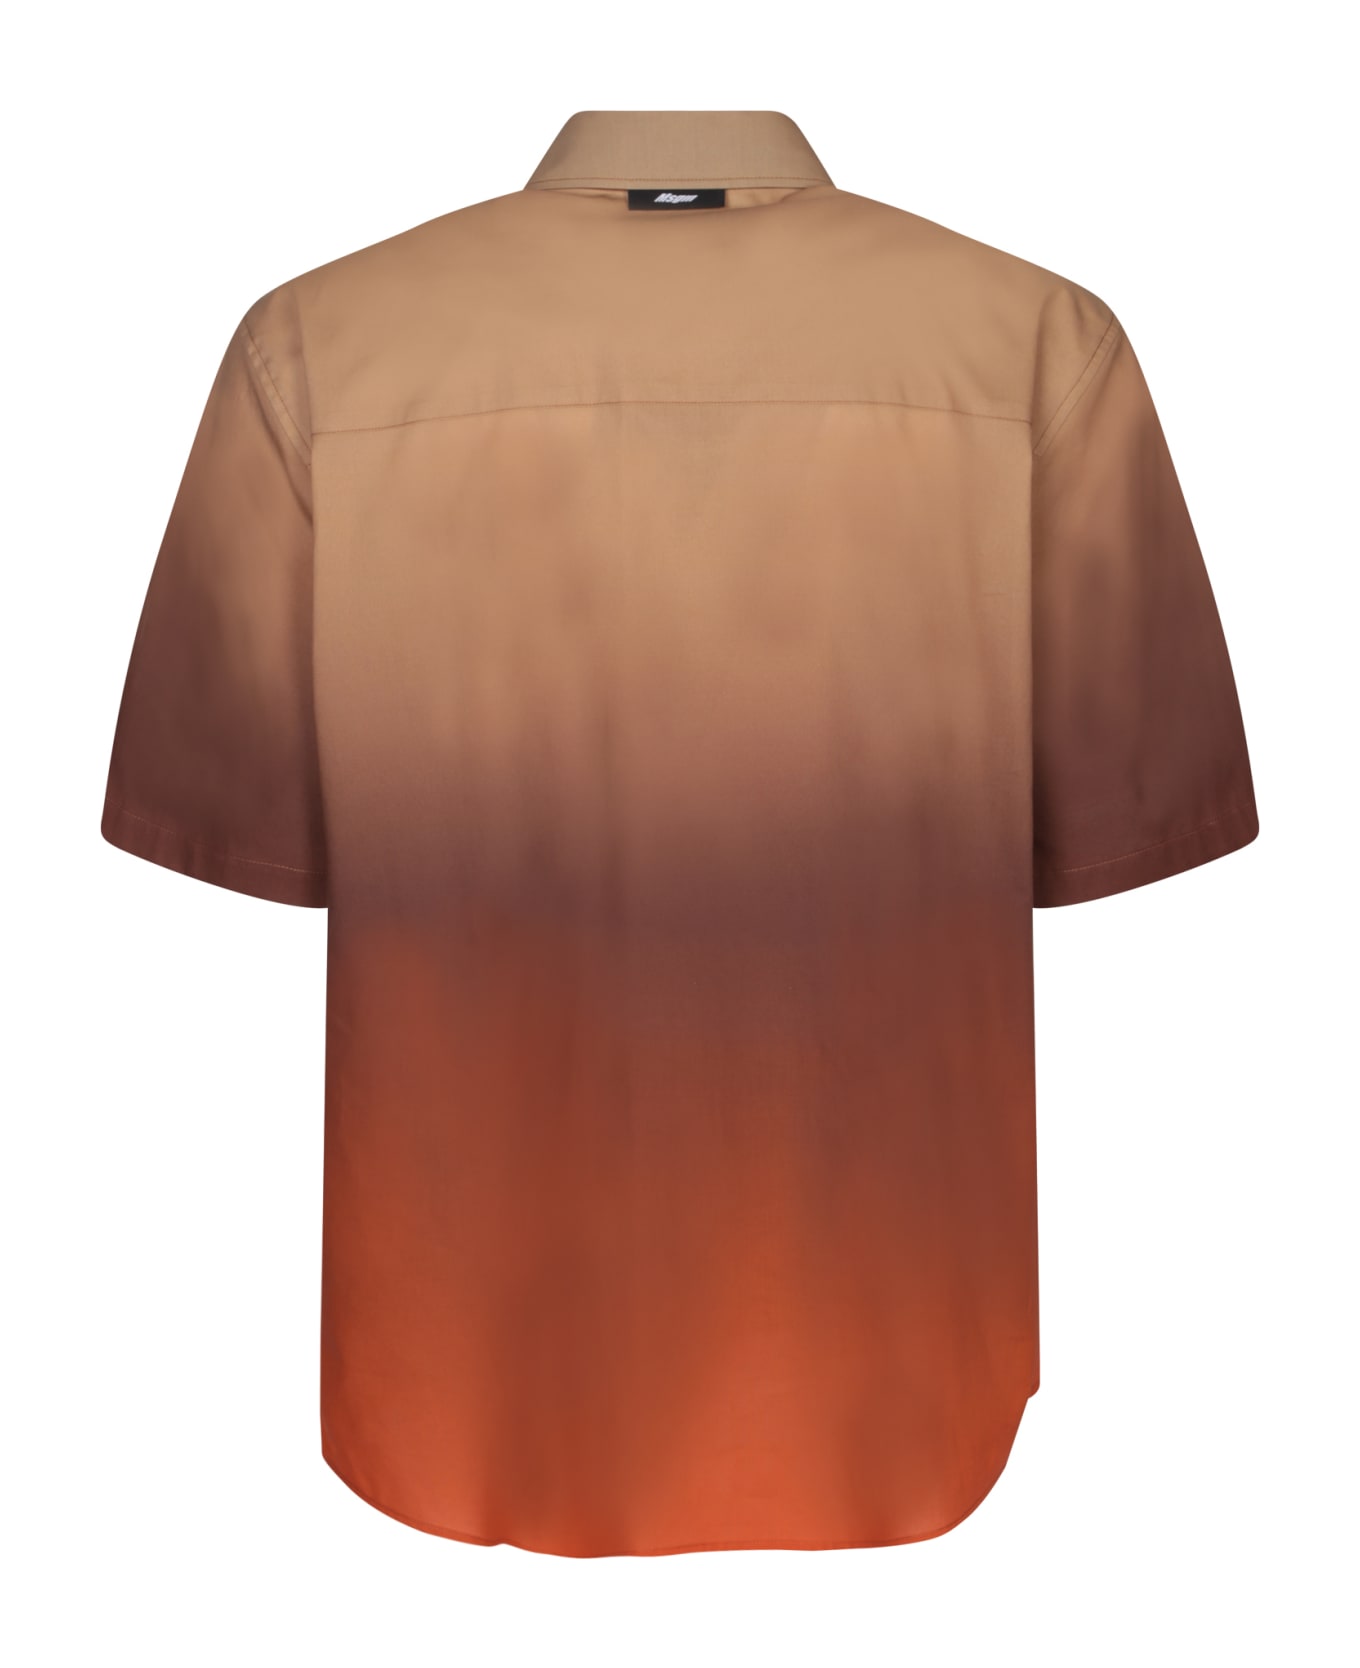 MSGM Dregradã¨ Beige/orange Shirt - Beige シャツ